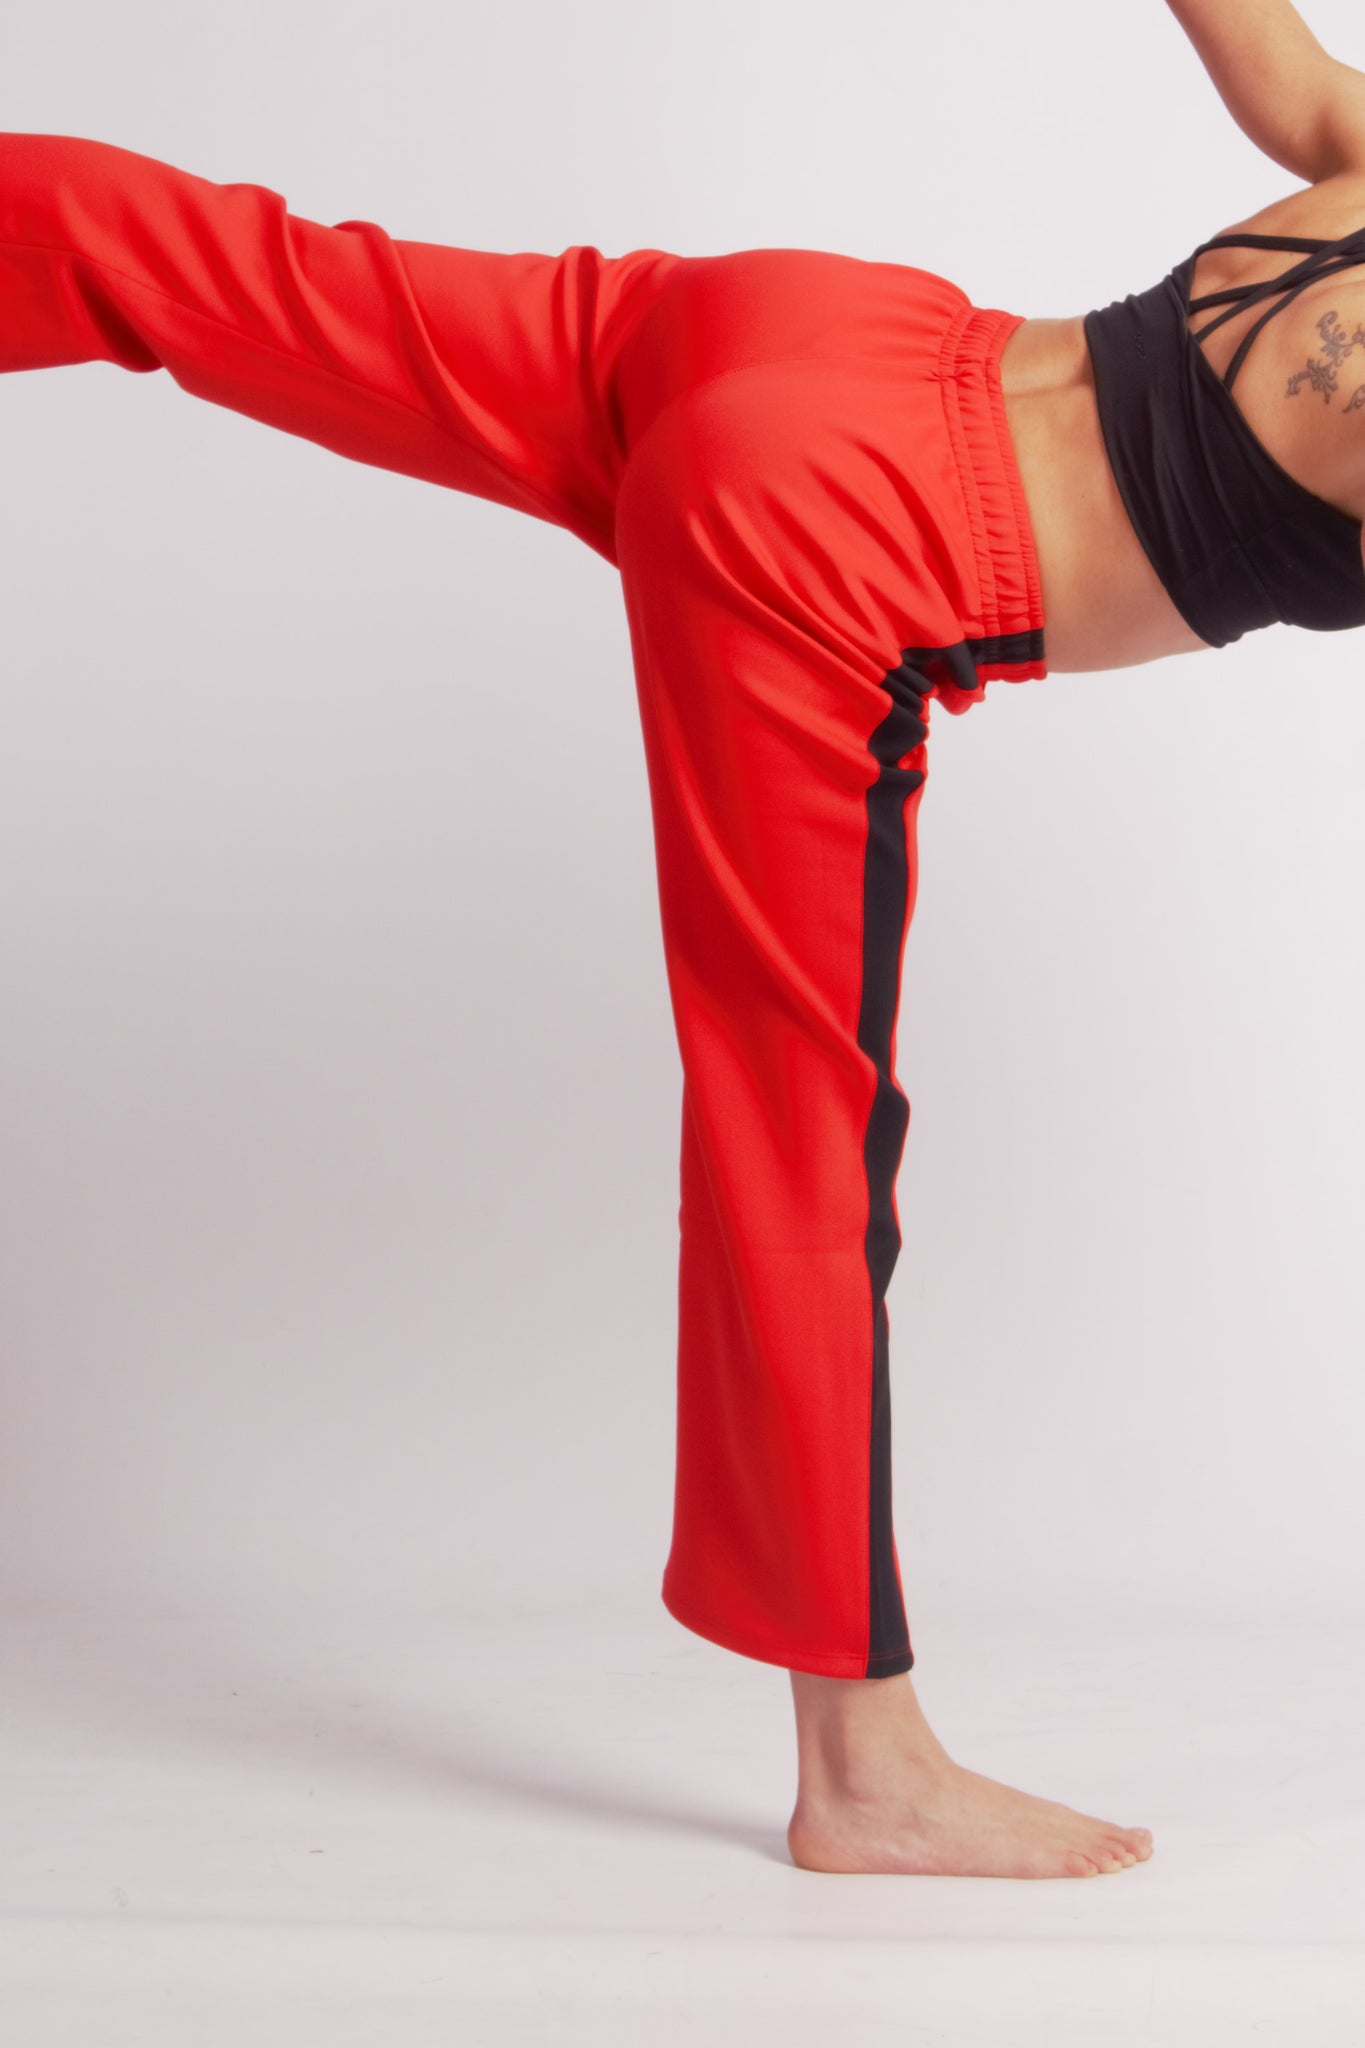 Flying Dance Pants es un pantalón de danza técnico unisex para entrenamiento de baile, danza contemporánea, acrobacia, yoga, artes marciales, pilates y cualquier disciplina vinculada al movimiento. Ideal para el trabajo de suelo, con un tejido resistente, deslizante y super absorbente. Color Rojo y Negro.